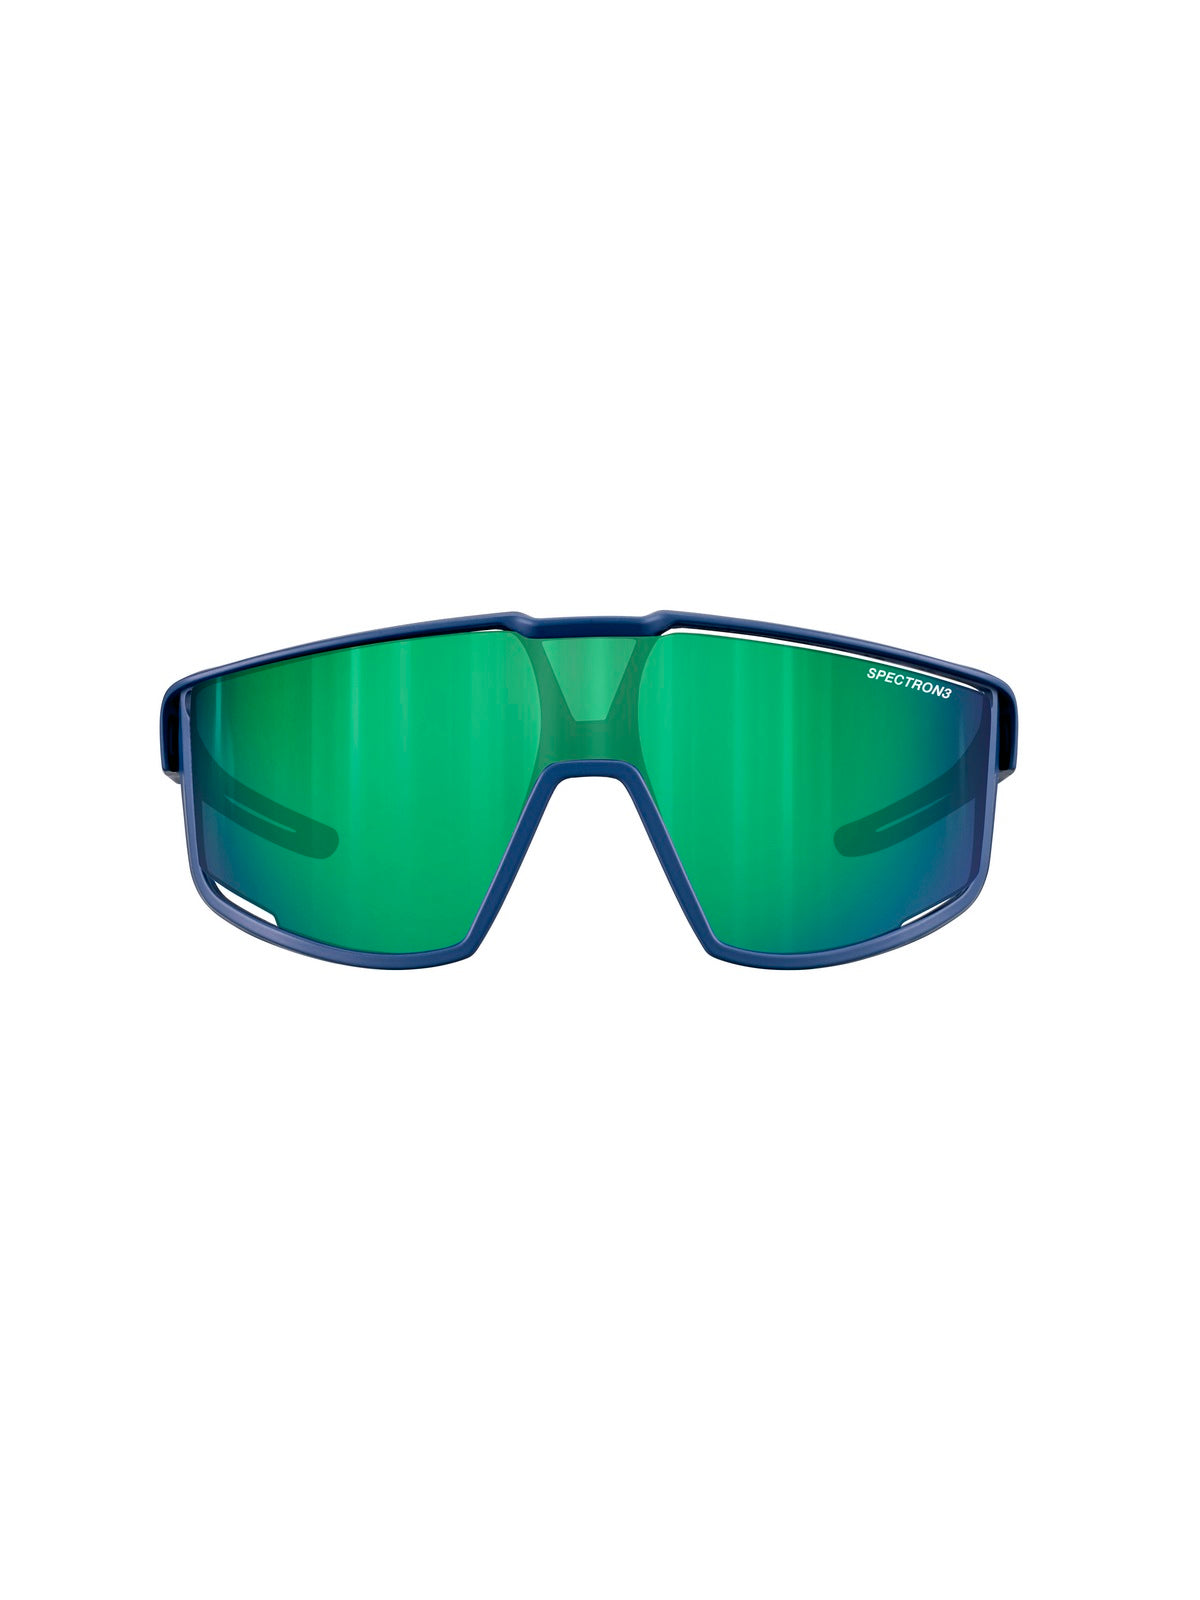 Okulary przeciwsłoneczne juniorskie Julbo Fury S -  ciemny niebieski | Spectron cat 3Cf